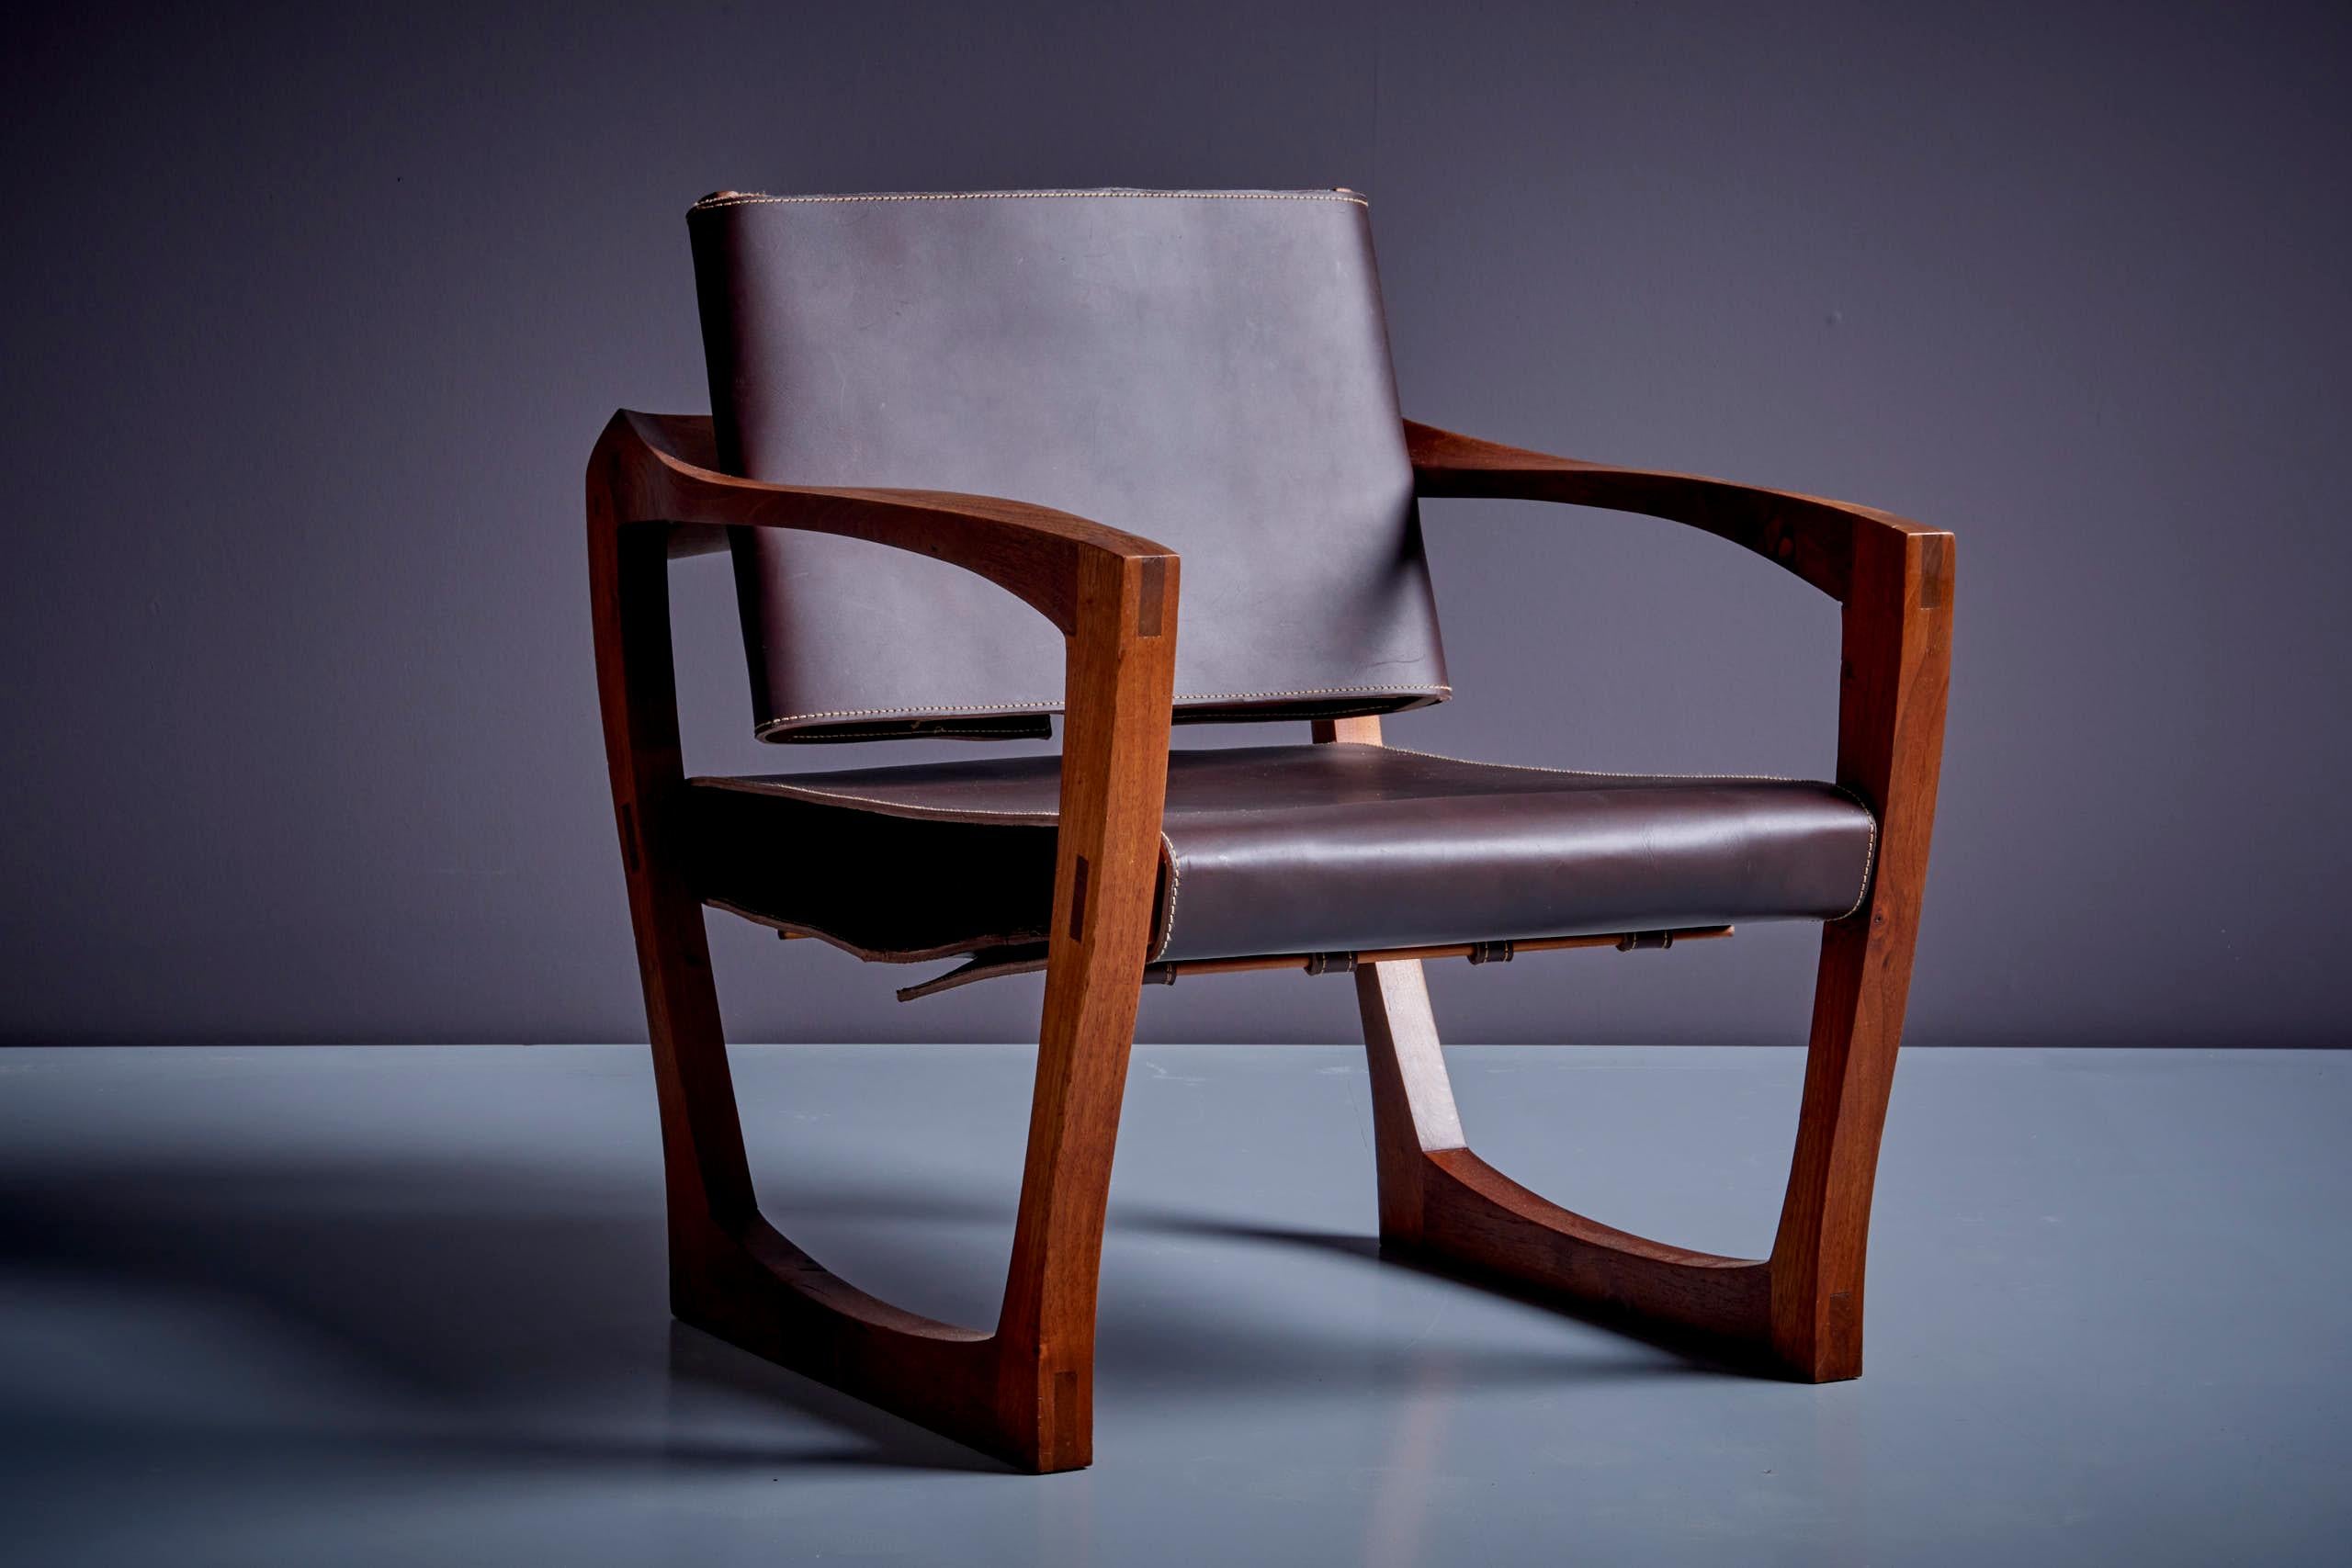 American Studio Lounge Chair mit skulpturalem Nussbaumsockel, USA 1960er Jahre. Neu gepolstert in einem schönen Latigo-Leder in Dunkelbraun. 